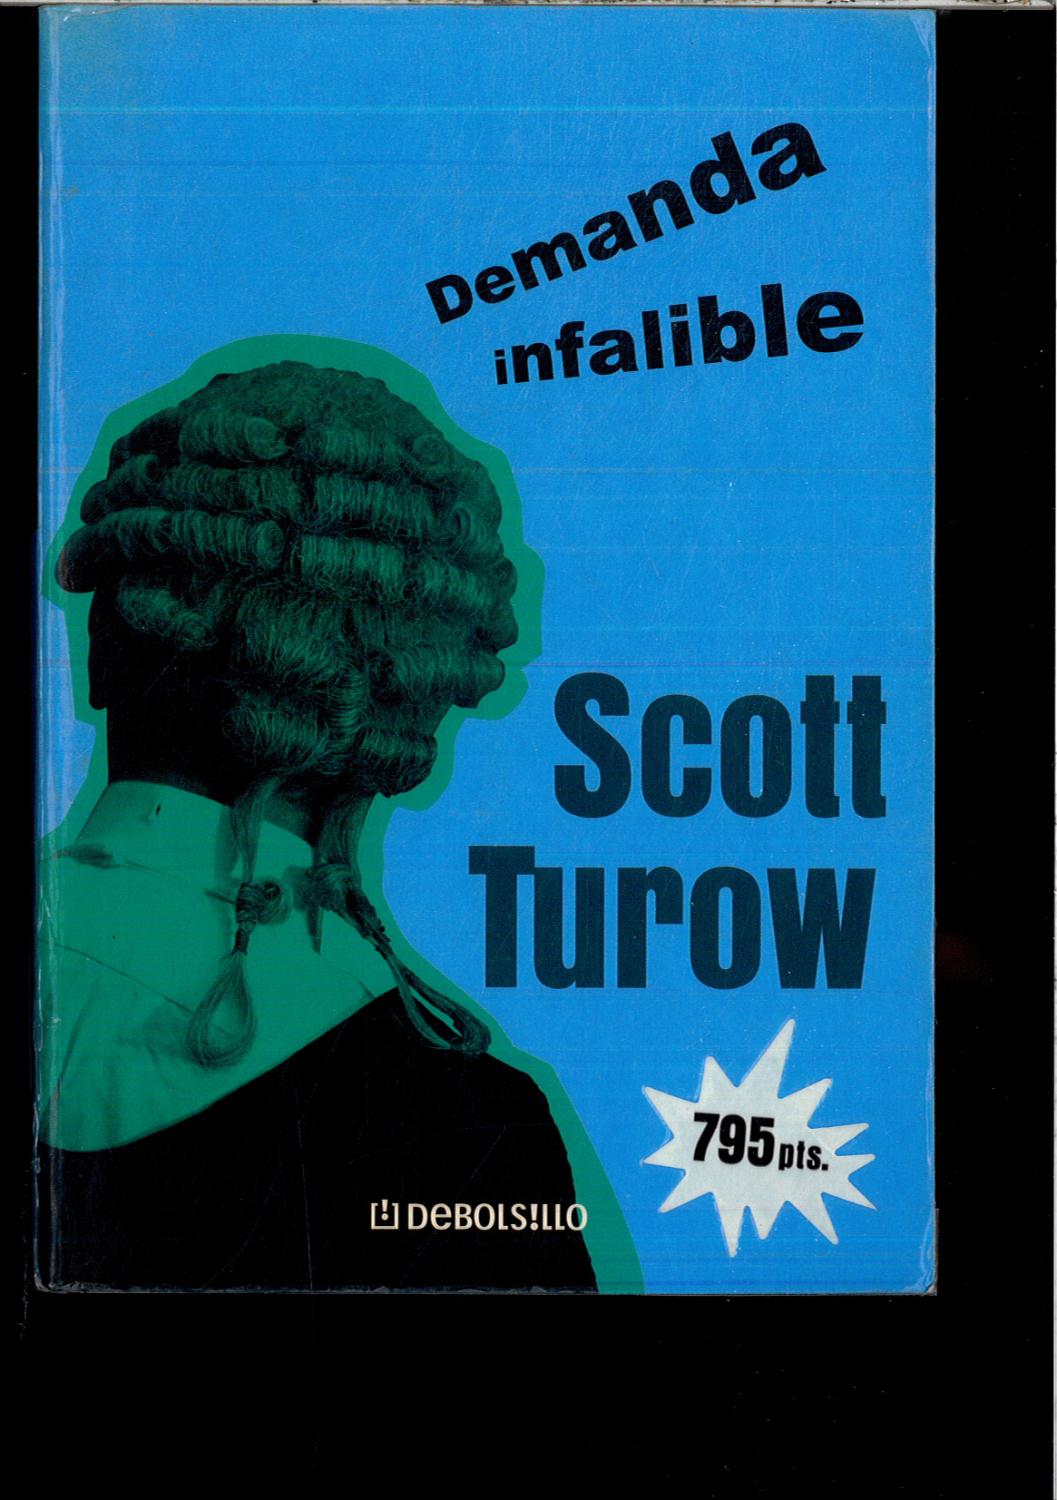 Demanda infalible - Turow, Scott